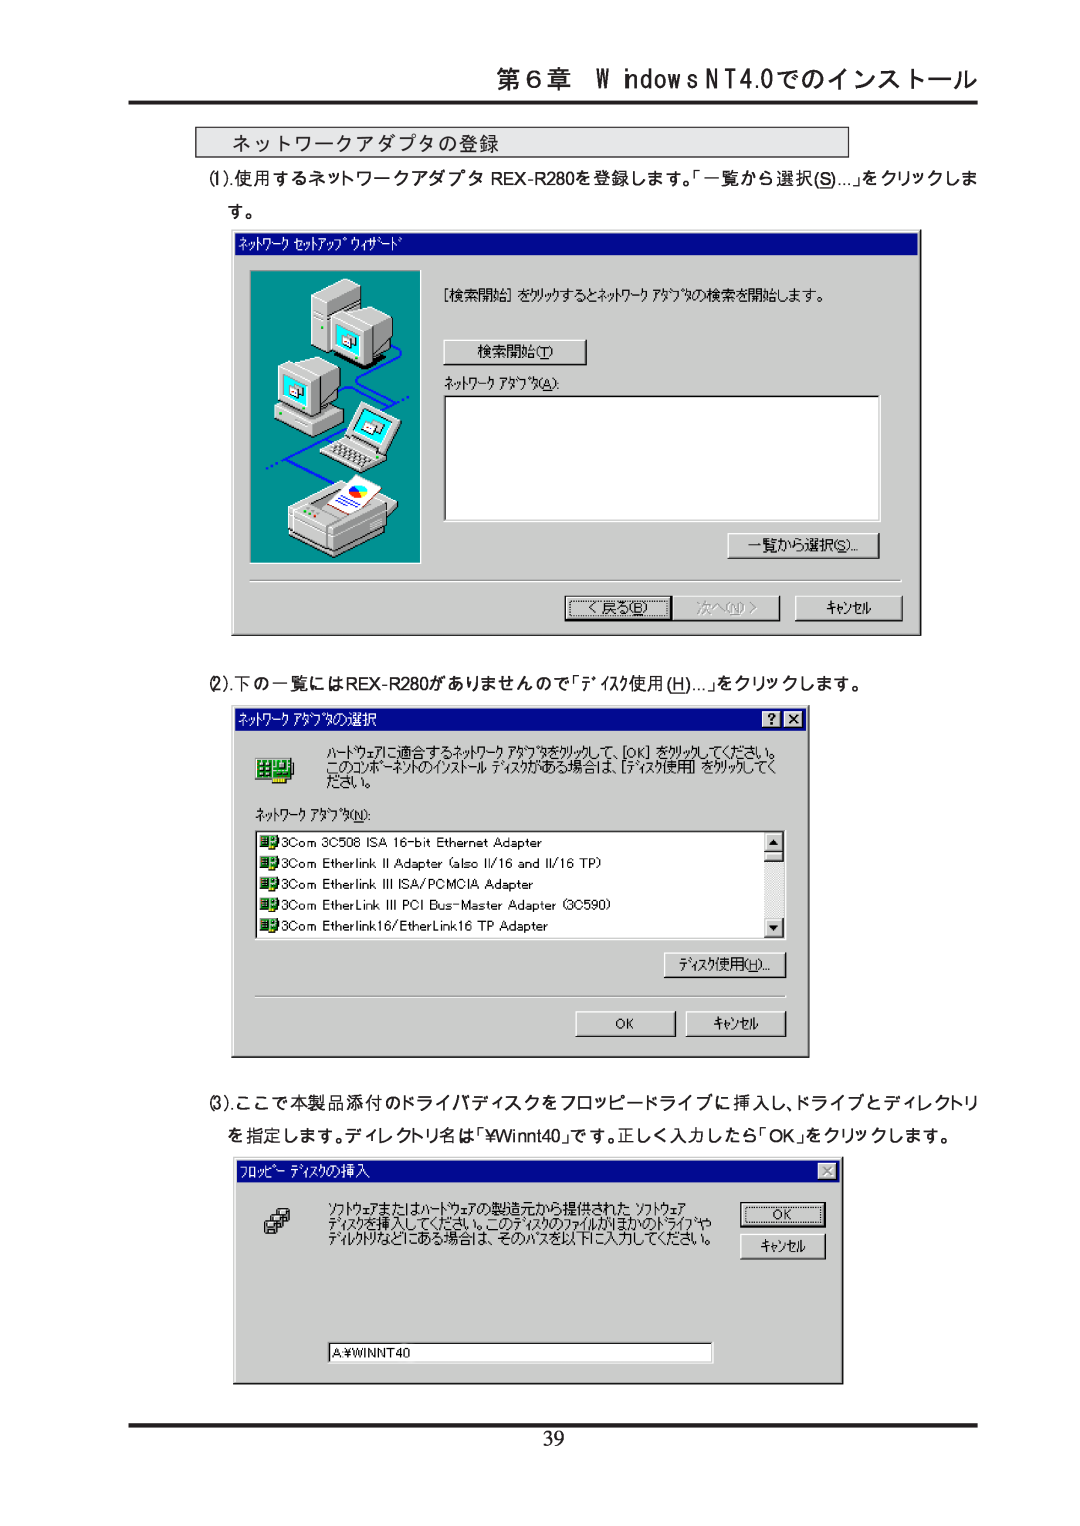 Ratoc Systems REX-R280 manual 第６章 Windows NT4.0でのインストール, ネットワークアダプタの登録 